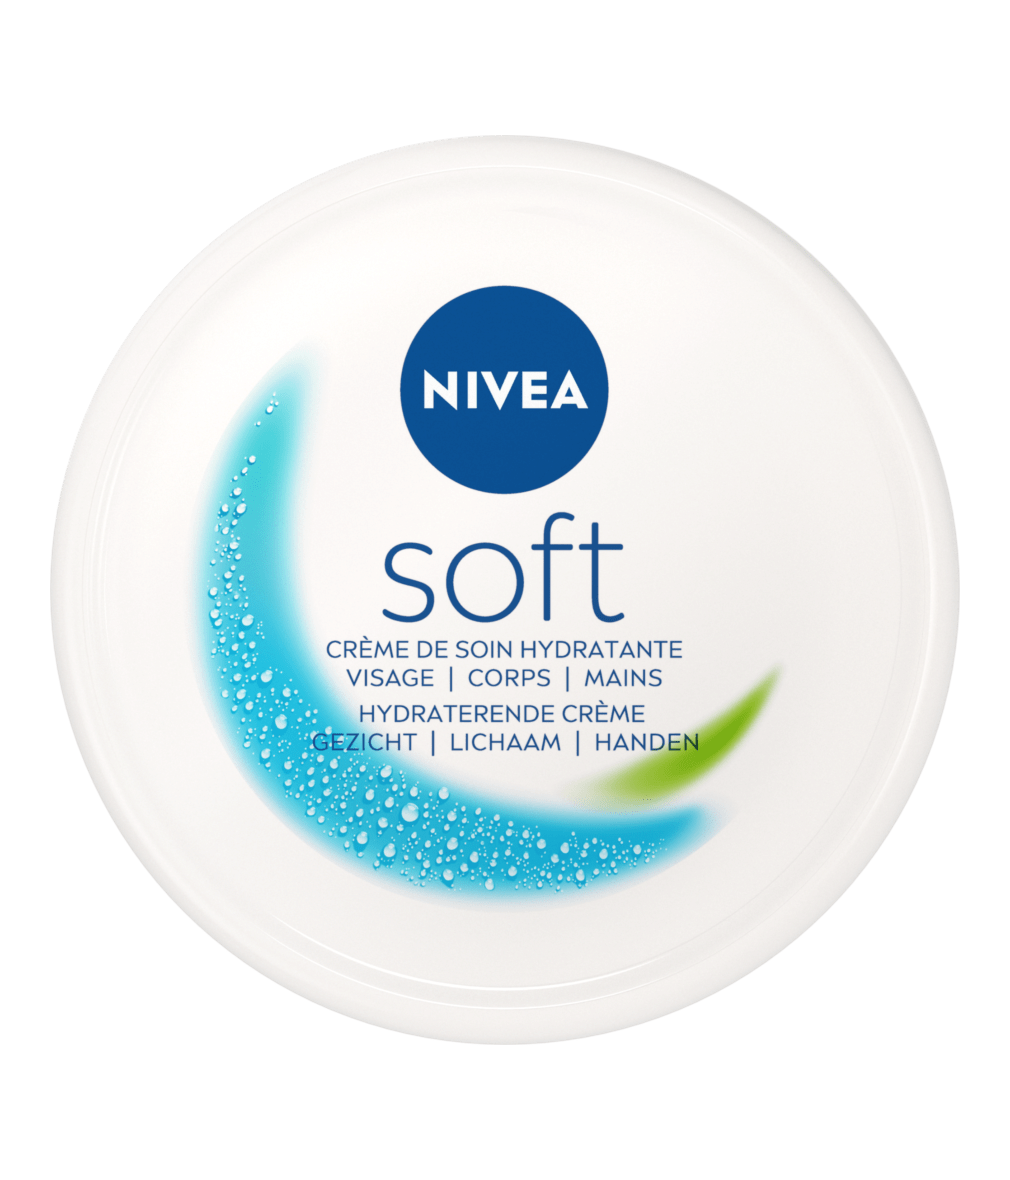 NIVEA SOFT crème - en hydraterend